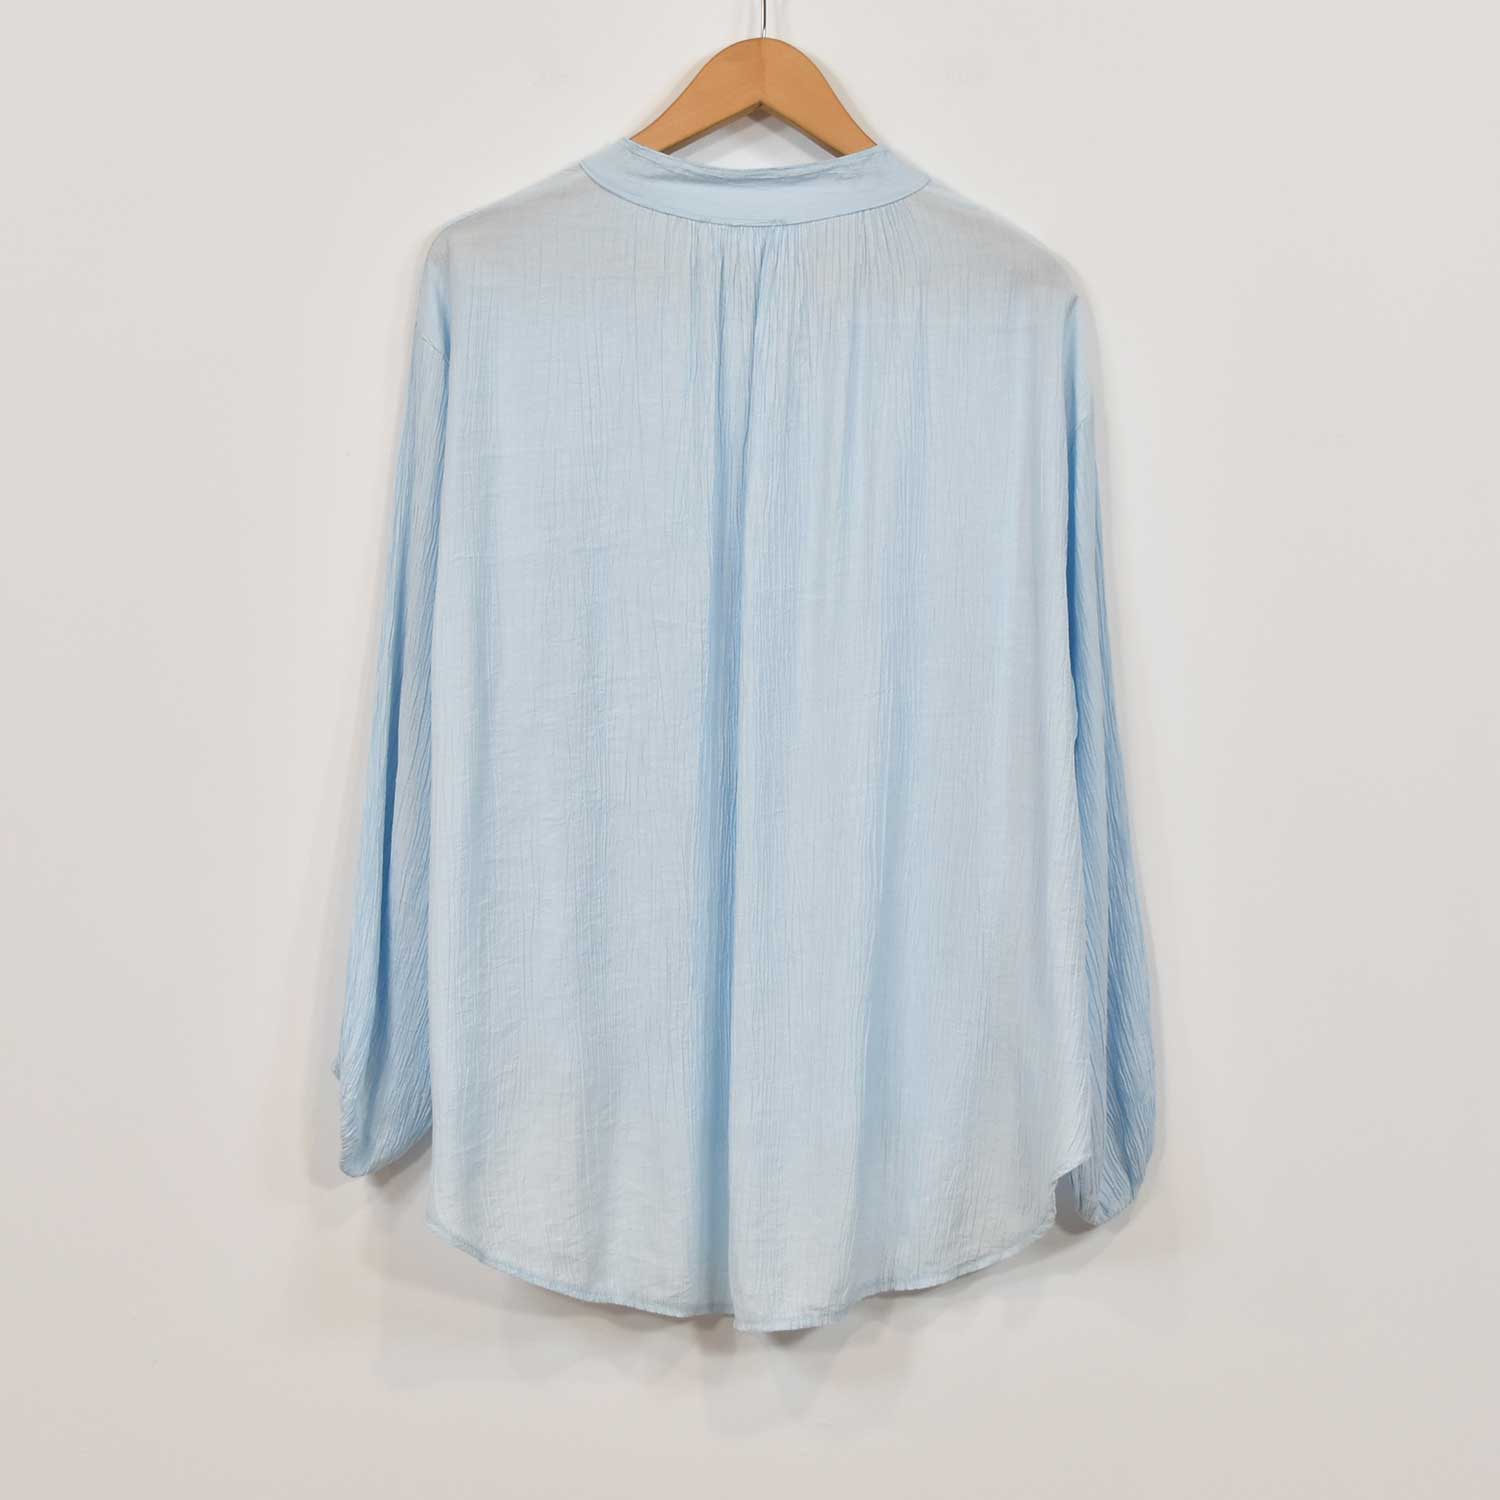 Light blue ruffled blouse